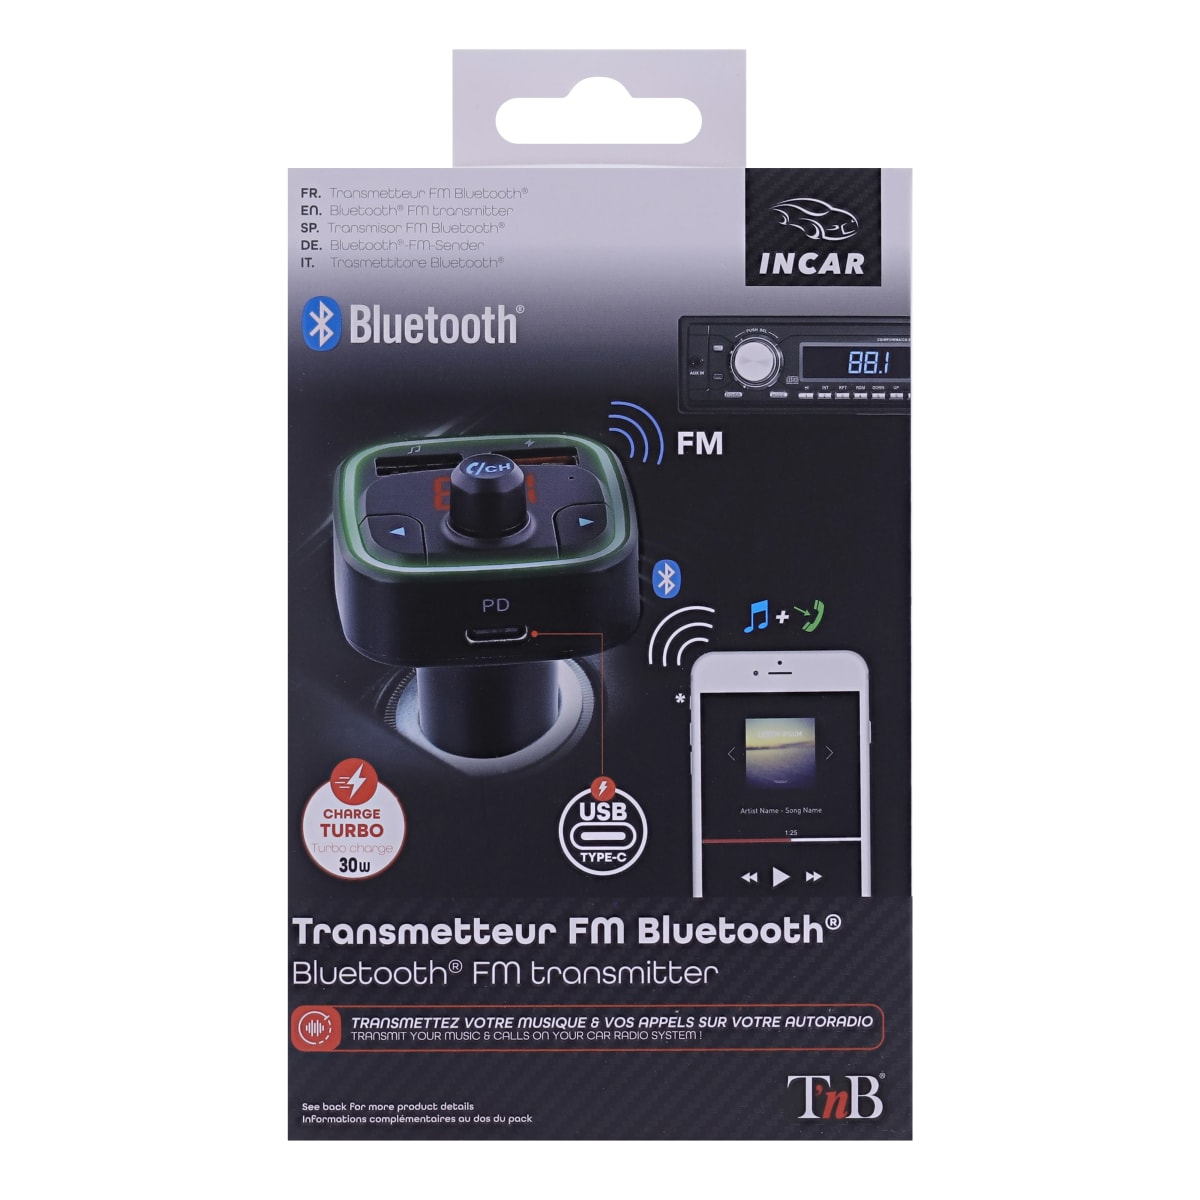 Transmetteur FM Bluetooth 3 en 1 - T'nB